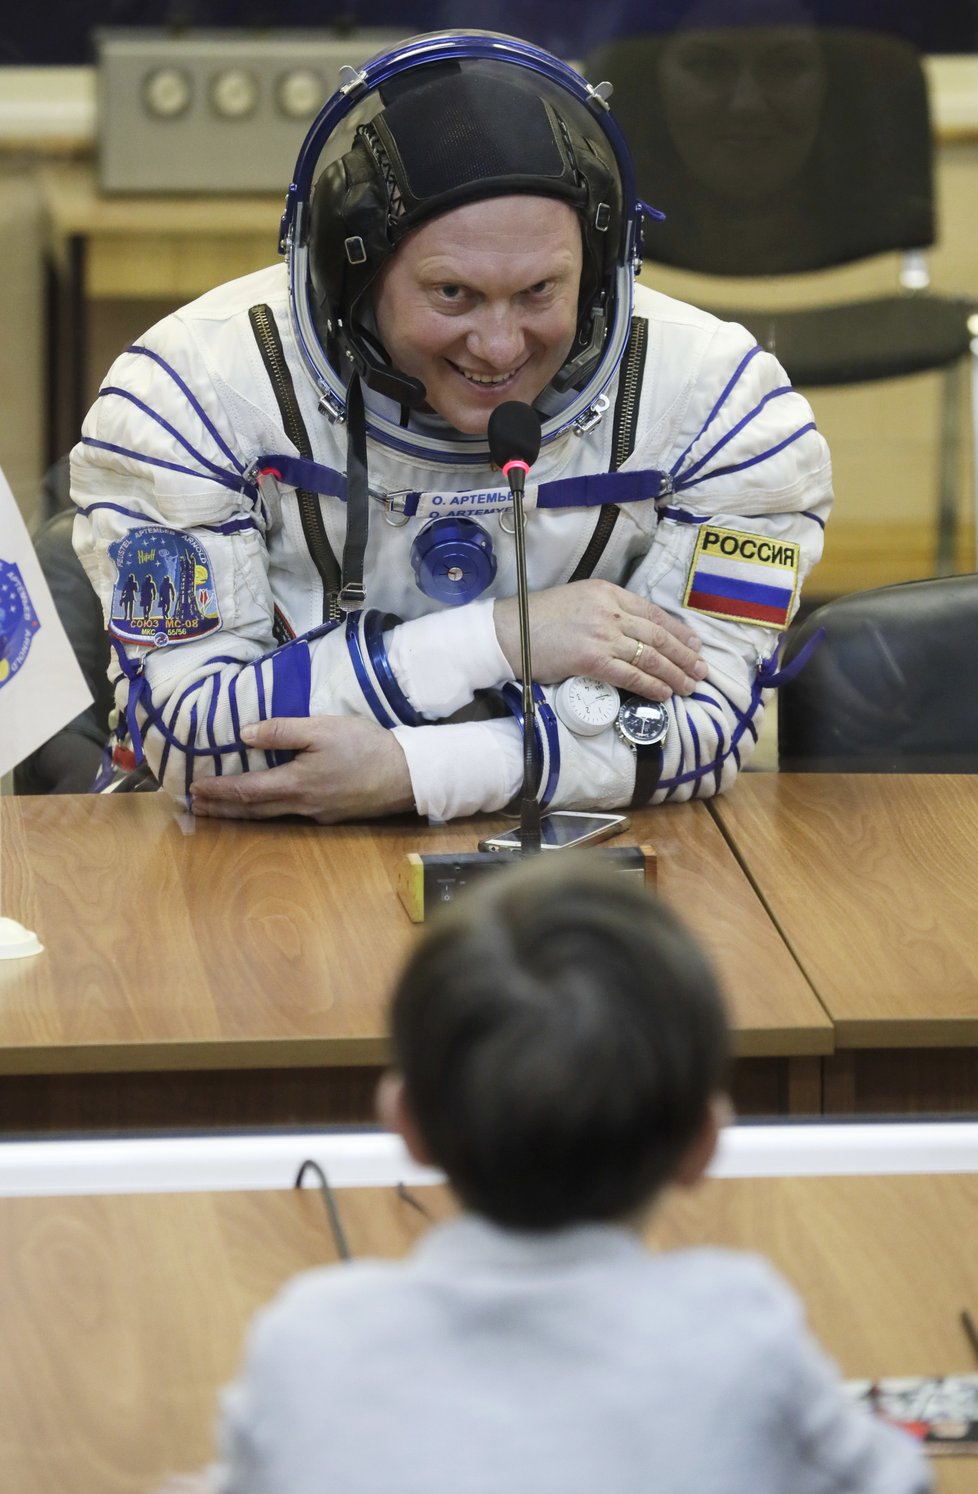 Z Bajkonuru zamířil Sojuz na ISS, nese i obrázky z Terezína